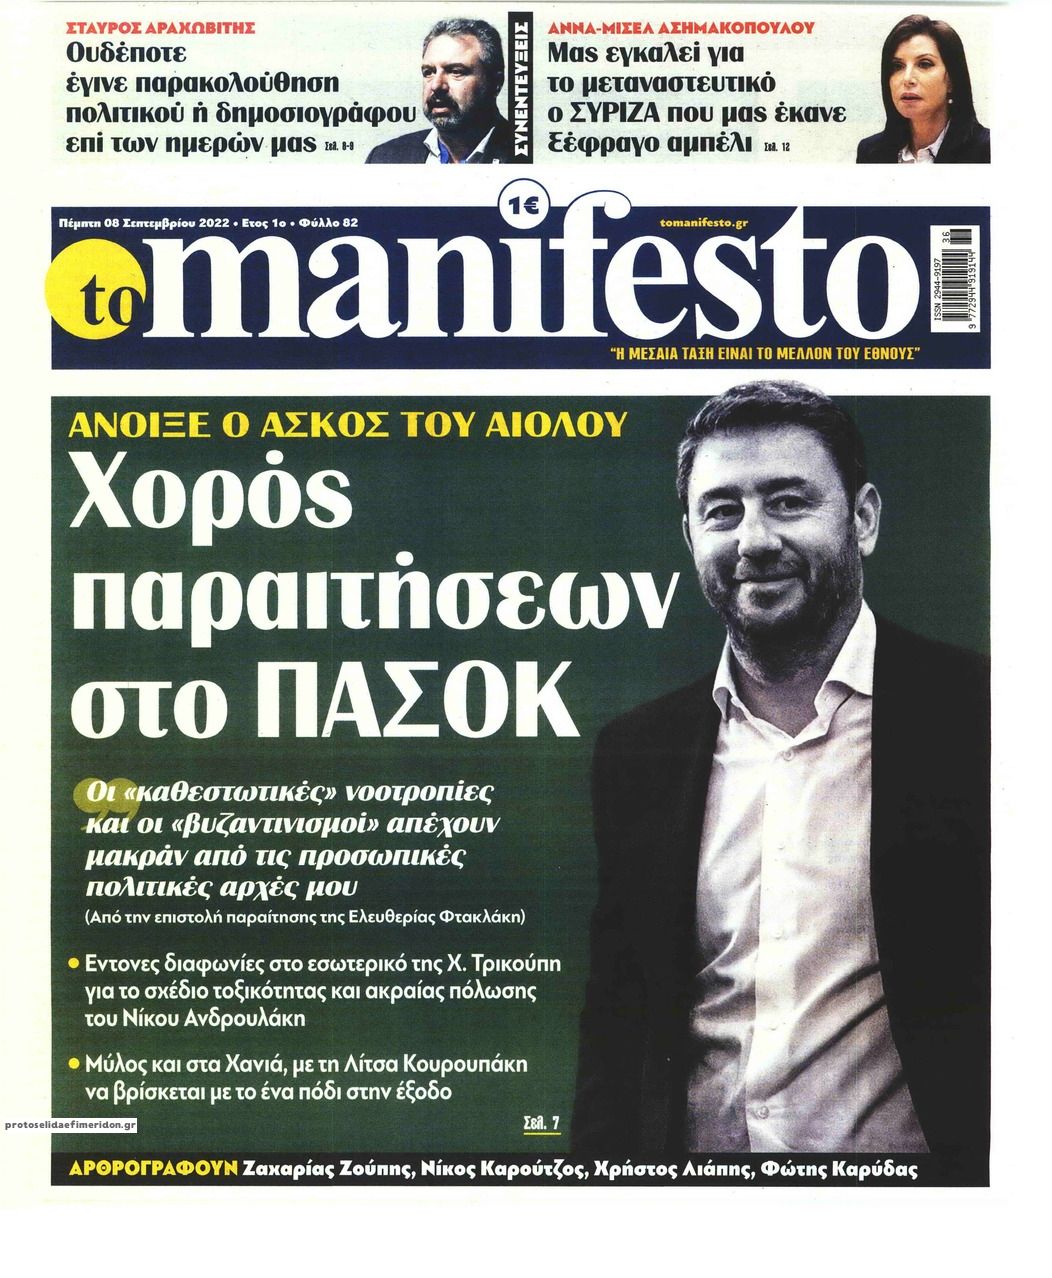 Πρωτοσέλιδο εφημερίδας Το Manifesto